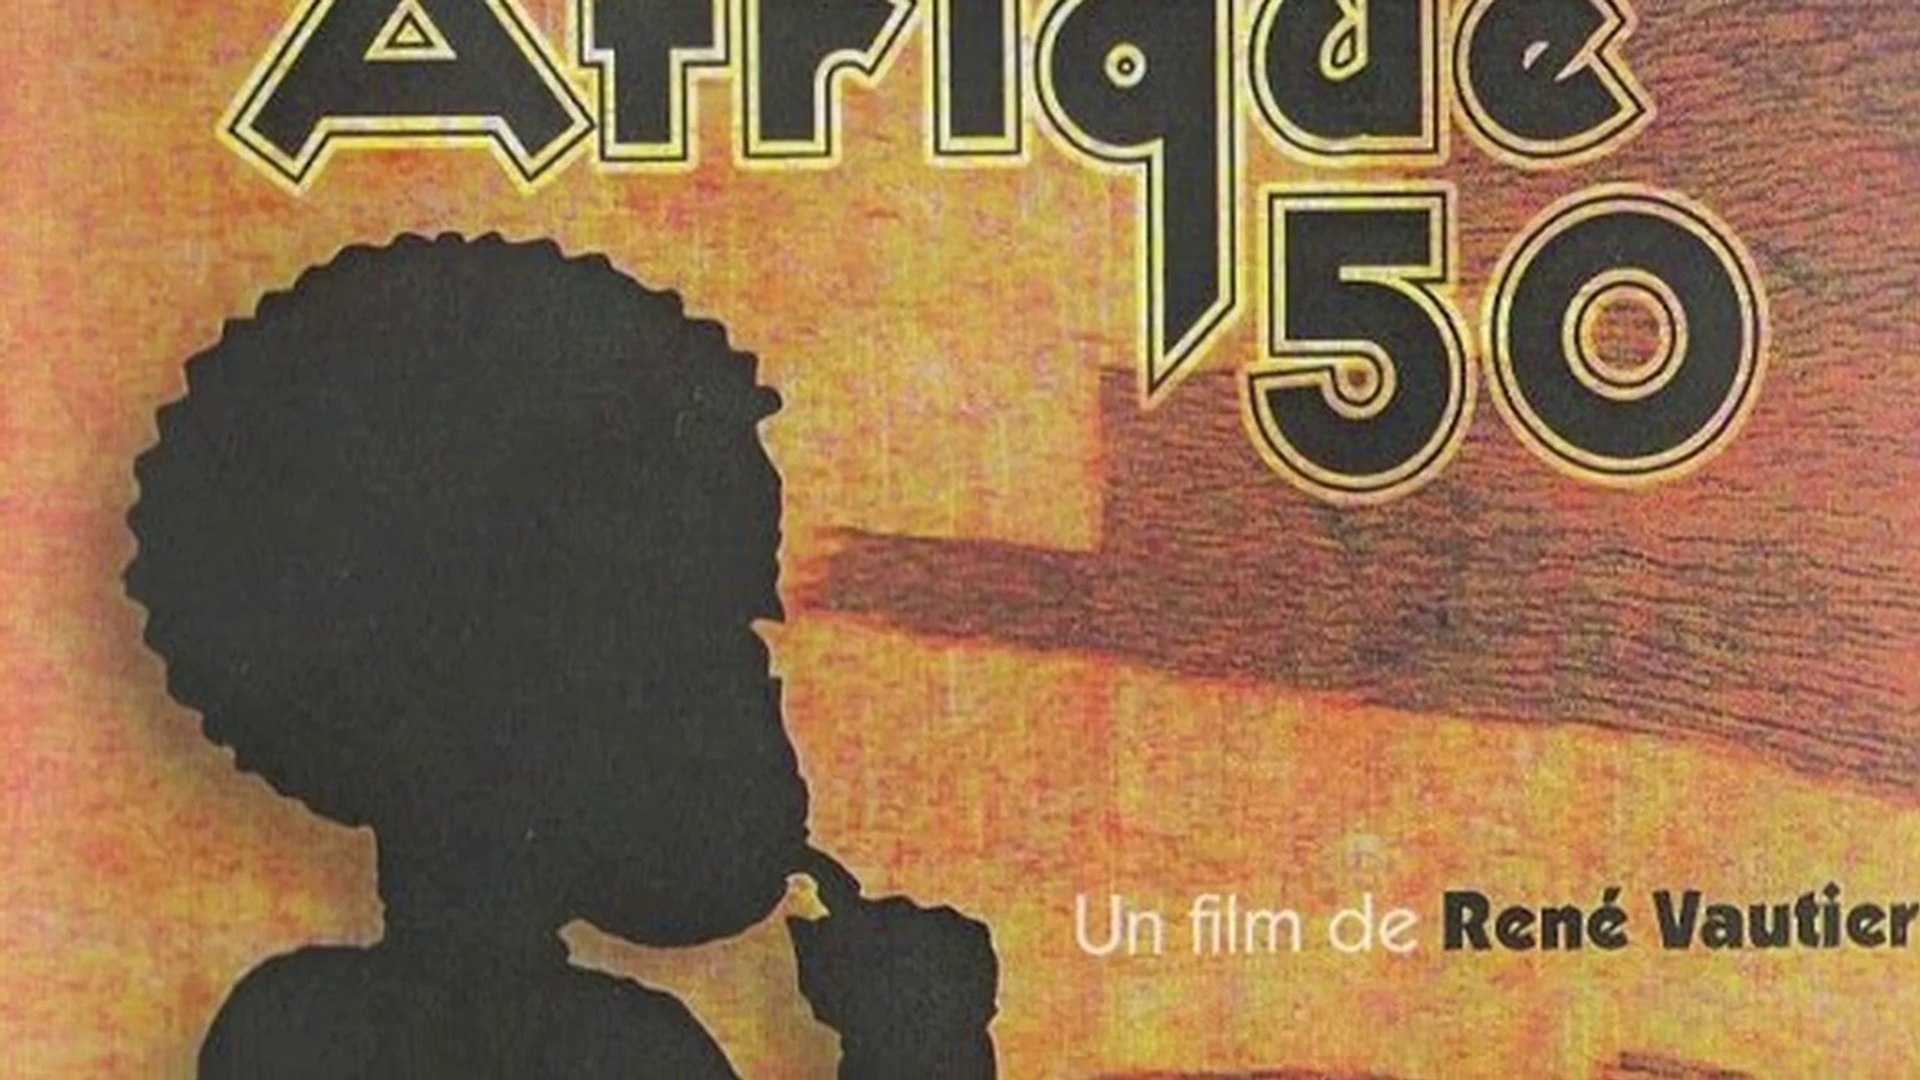 AFRIQUE 50 - DE SABLE ET DE SANG (LIVRE+DVD)